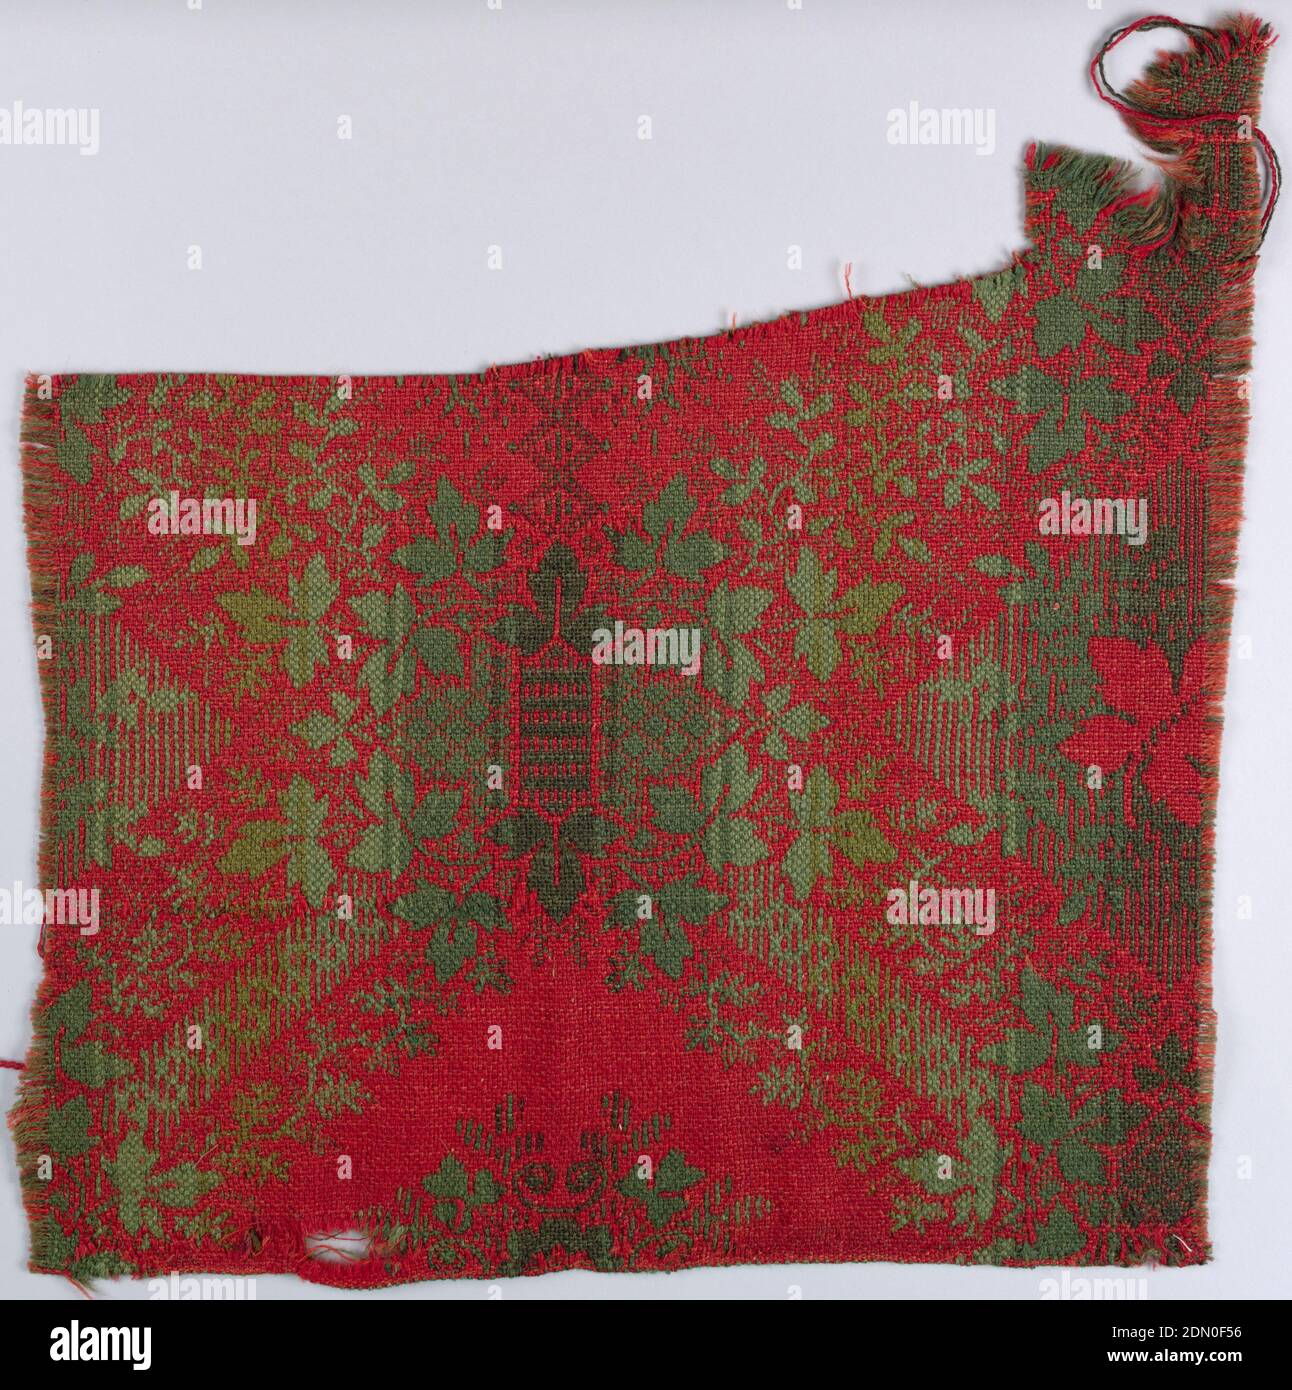 Frammento di tappeto, mezzo: Lana tecnica: Doppio tessuto, disegno floreale e losanga in rosso, verde e blu., USA, 19 ° secolo, tessuti tessuti, frammento di tappeto Foto Stock